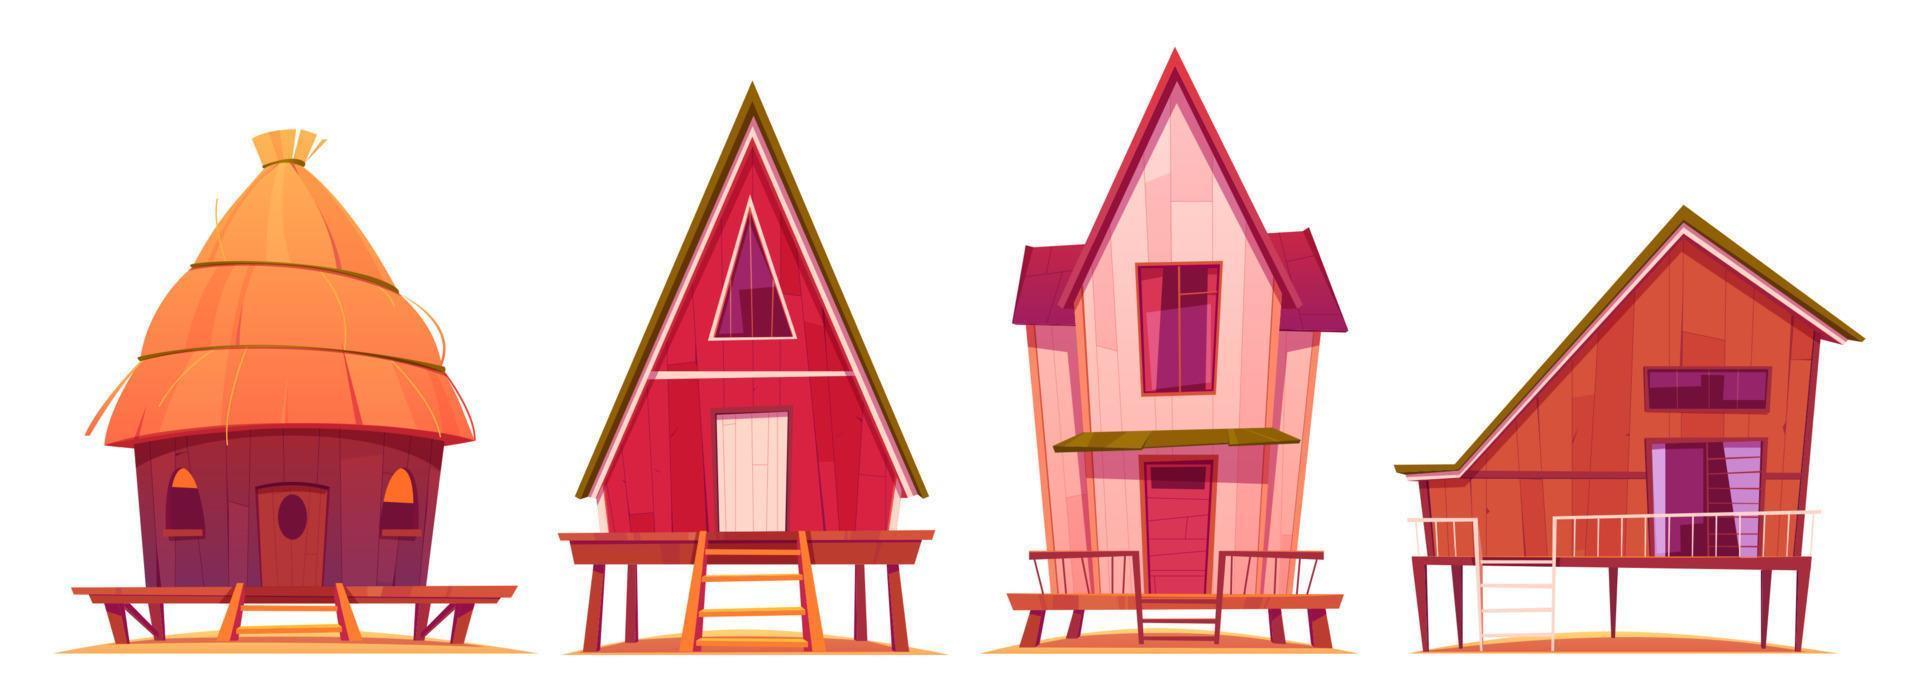 bungalows, maisons de plage sur pilotis avec terrasse vecteur